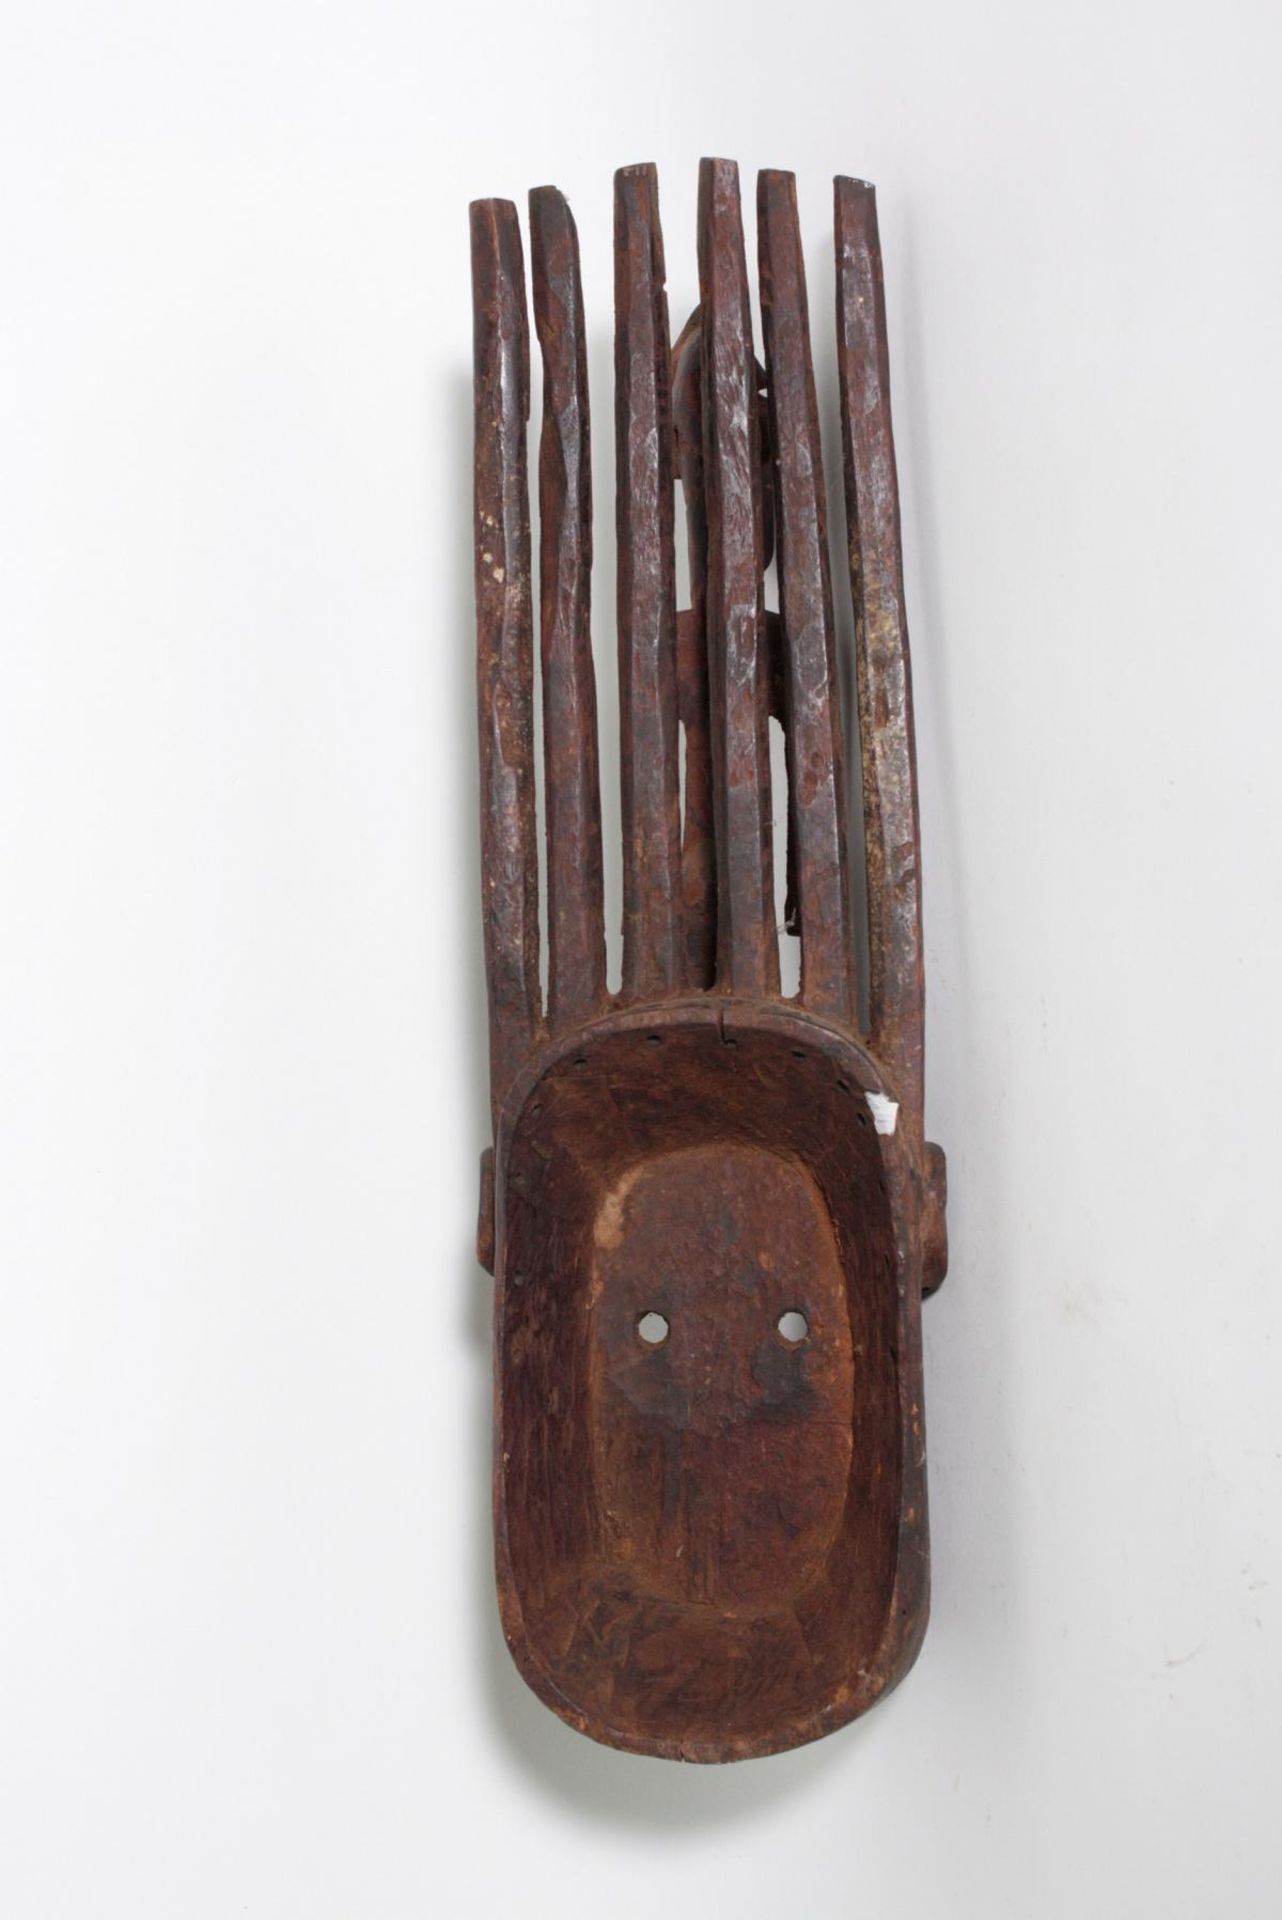 N'tomo Maske, Bamana, Mali, 1. Hälfte 20. Jh.Holz, matte braun-schwarze Patina mit Gebrauchsspuren - Bild 4 aus 4